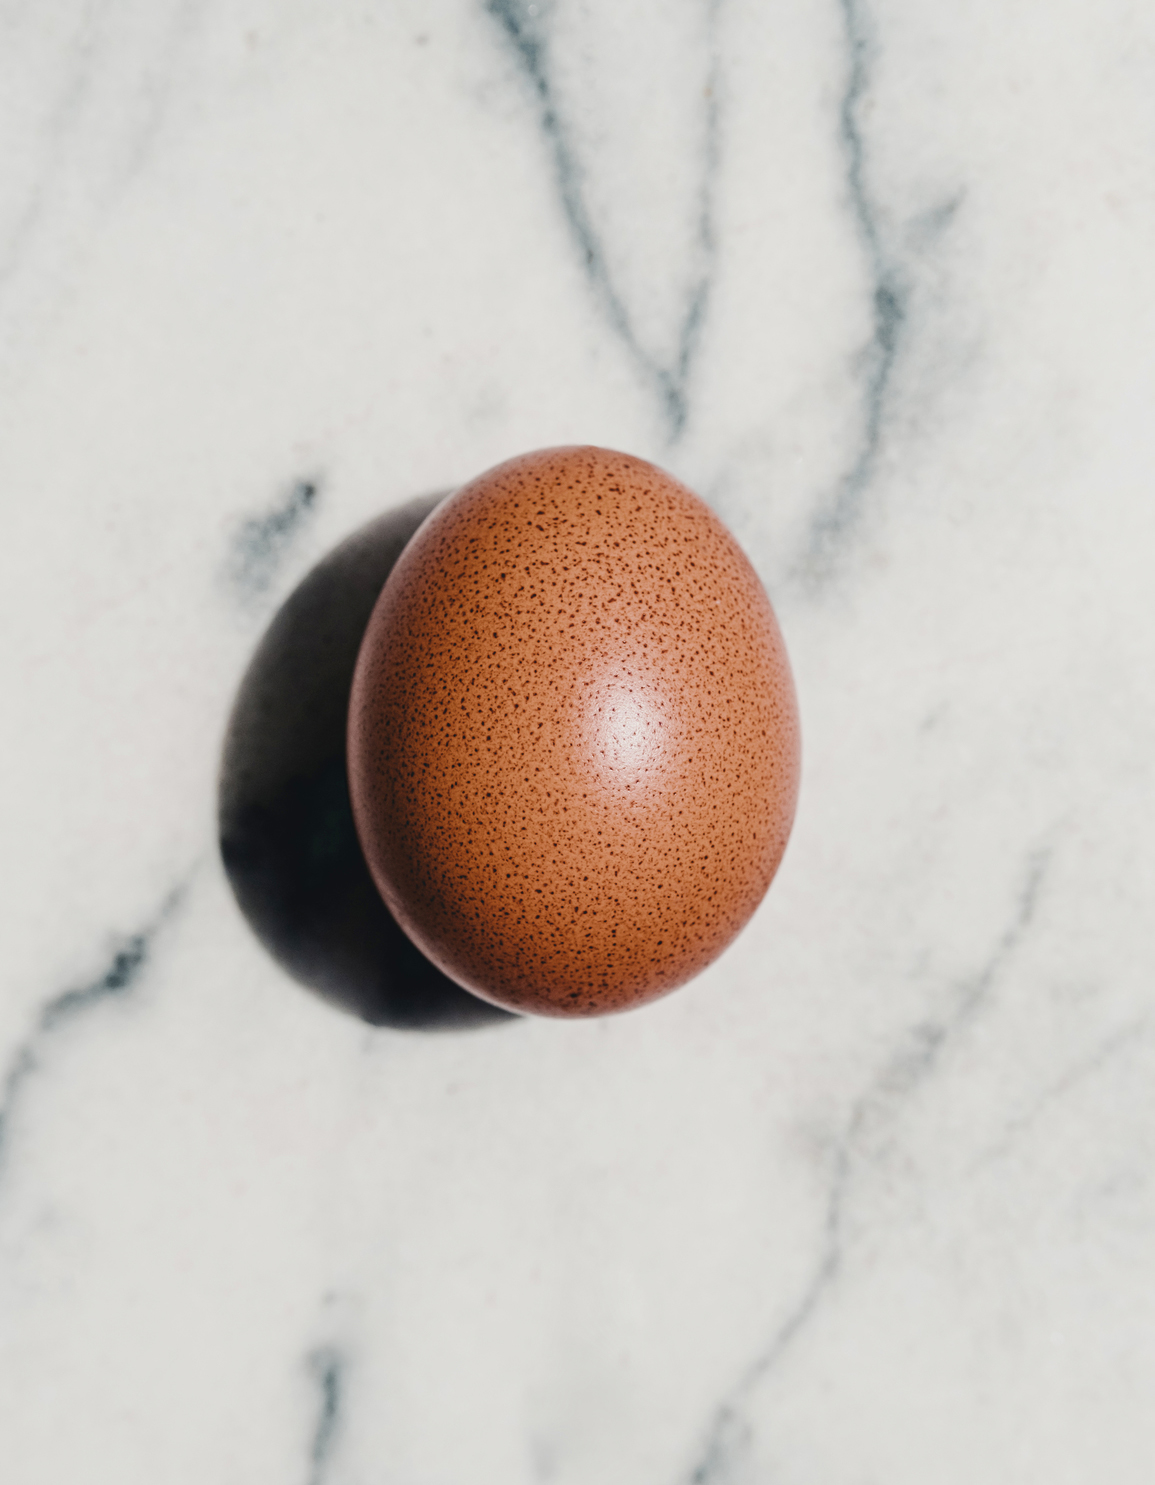 egg symbolizing fertility